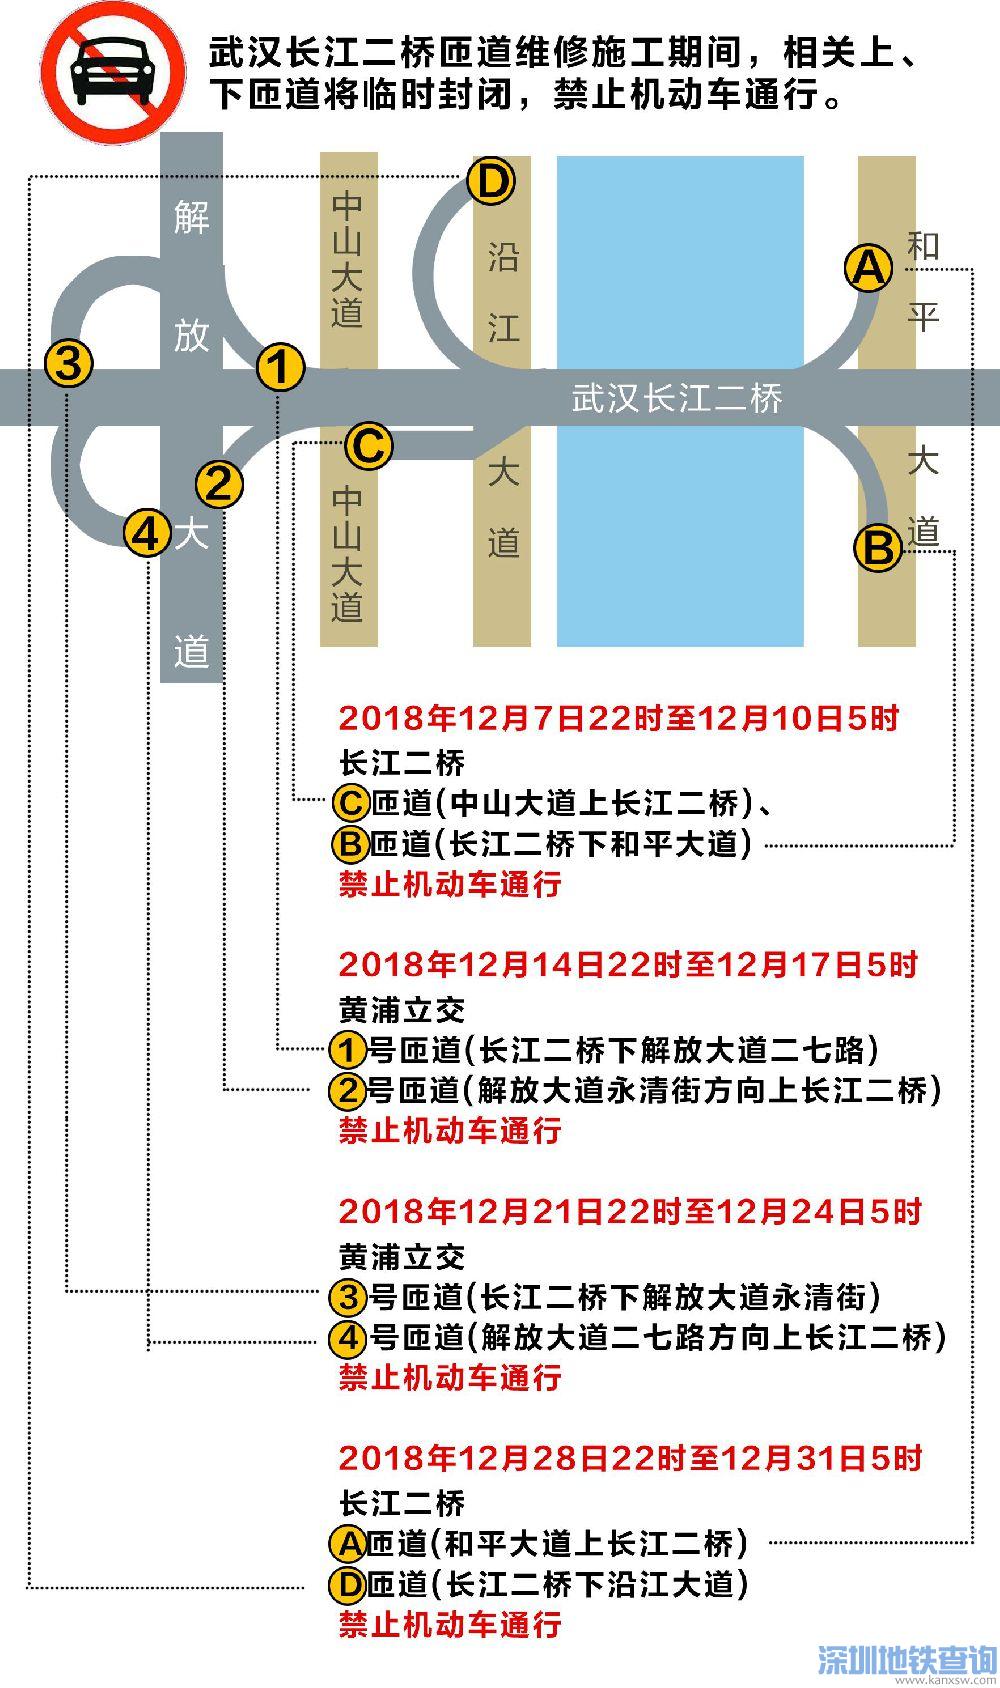 武汉长江二桥匝道12月7日至12月31日维修